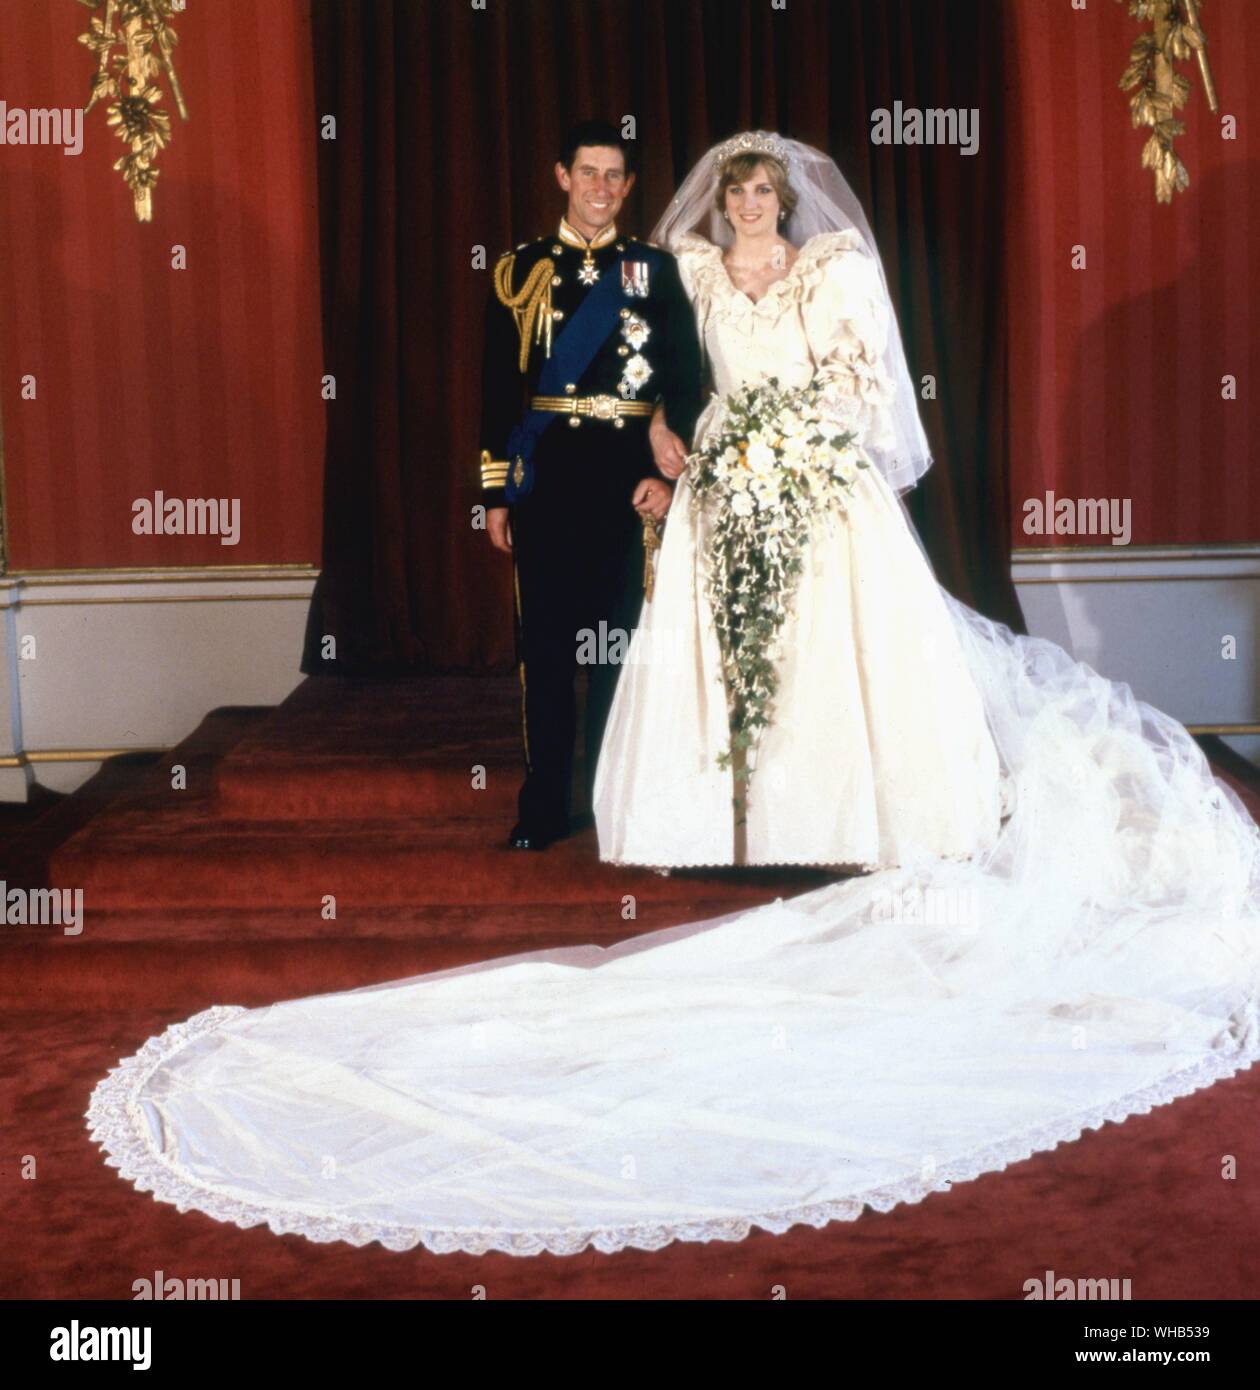 Hochzeit des Prinzen und der Prinzessin von Wales (Lady Diana Spencer) vom 29. Juli 1981 - Buckingham Palace. Stockfoto